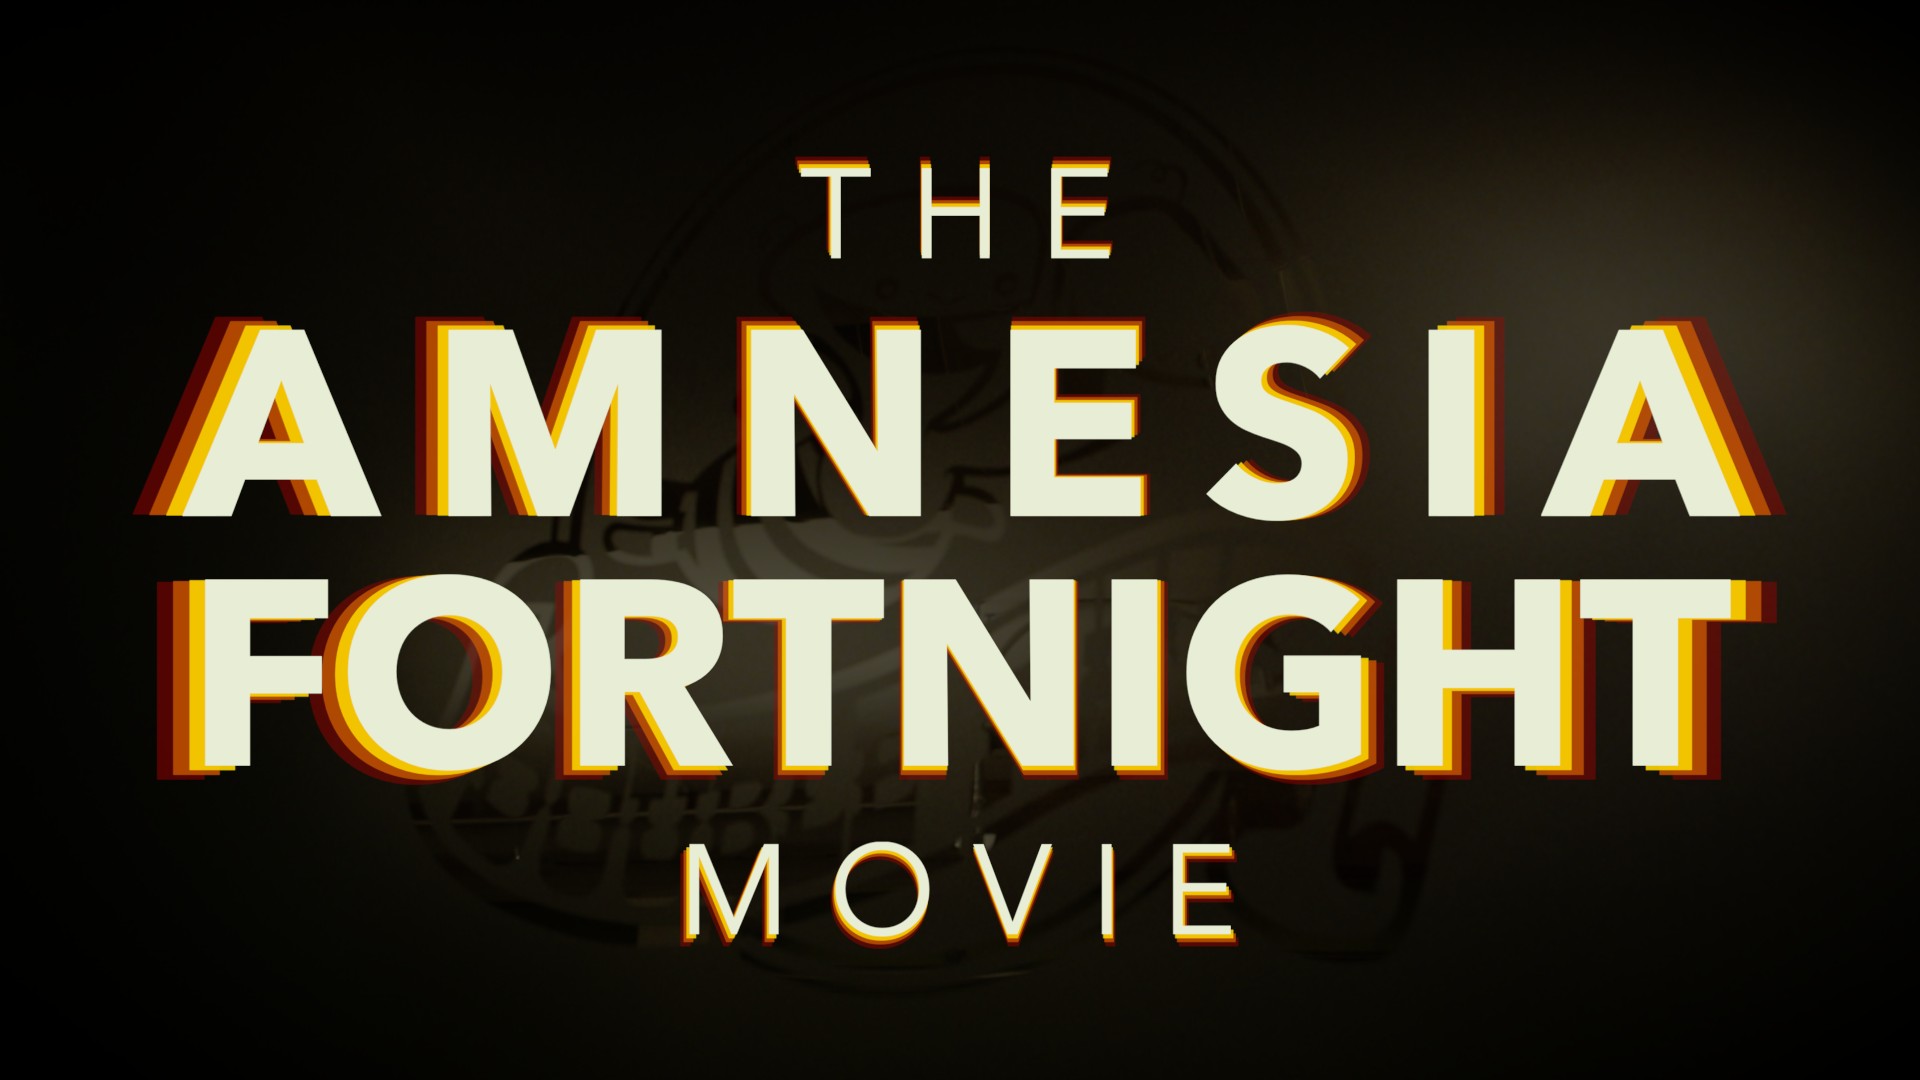 Double Fine’s The Amnesia Fortnight Movie Trailer